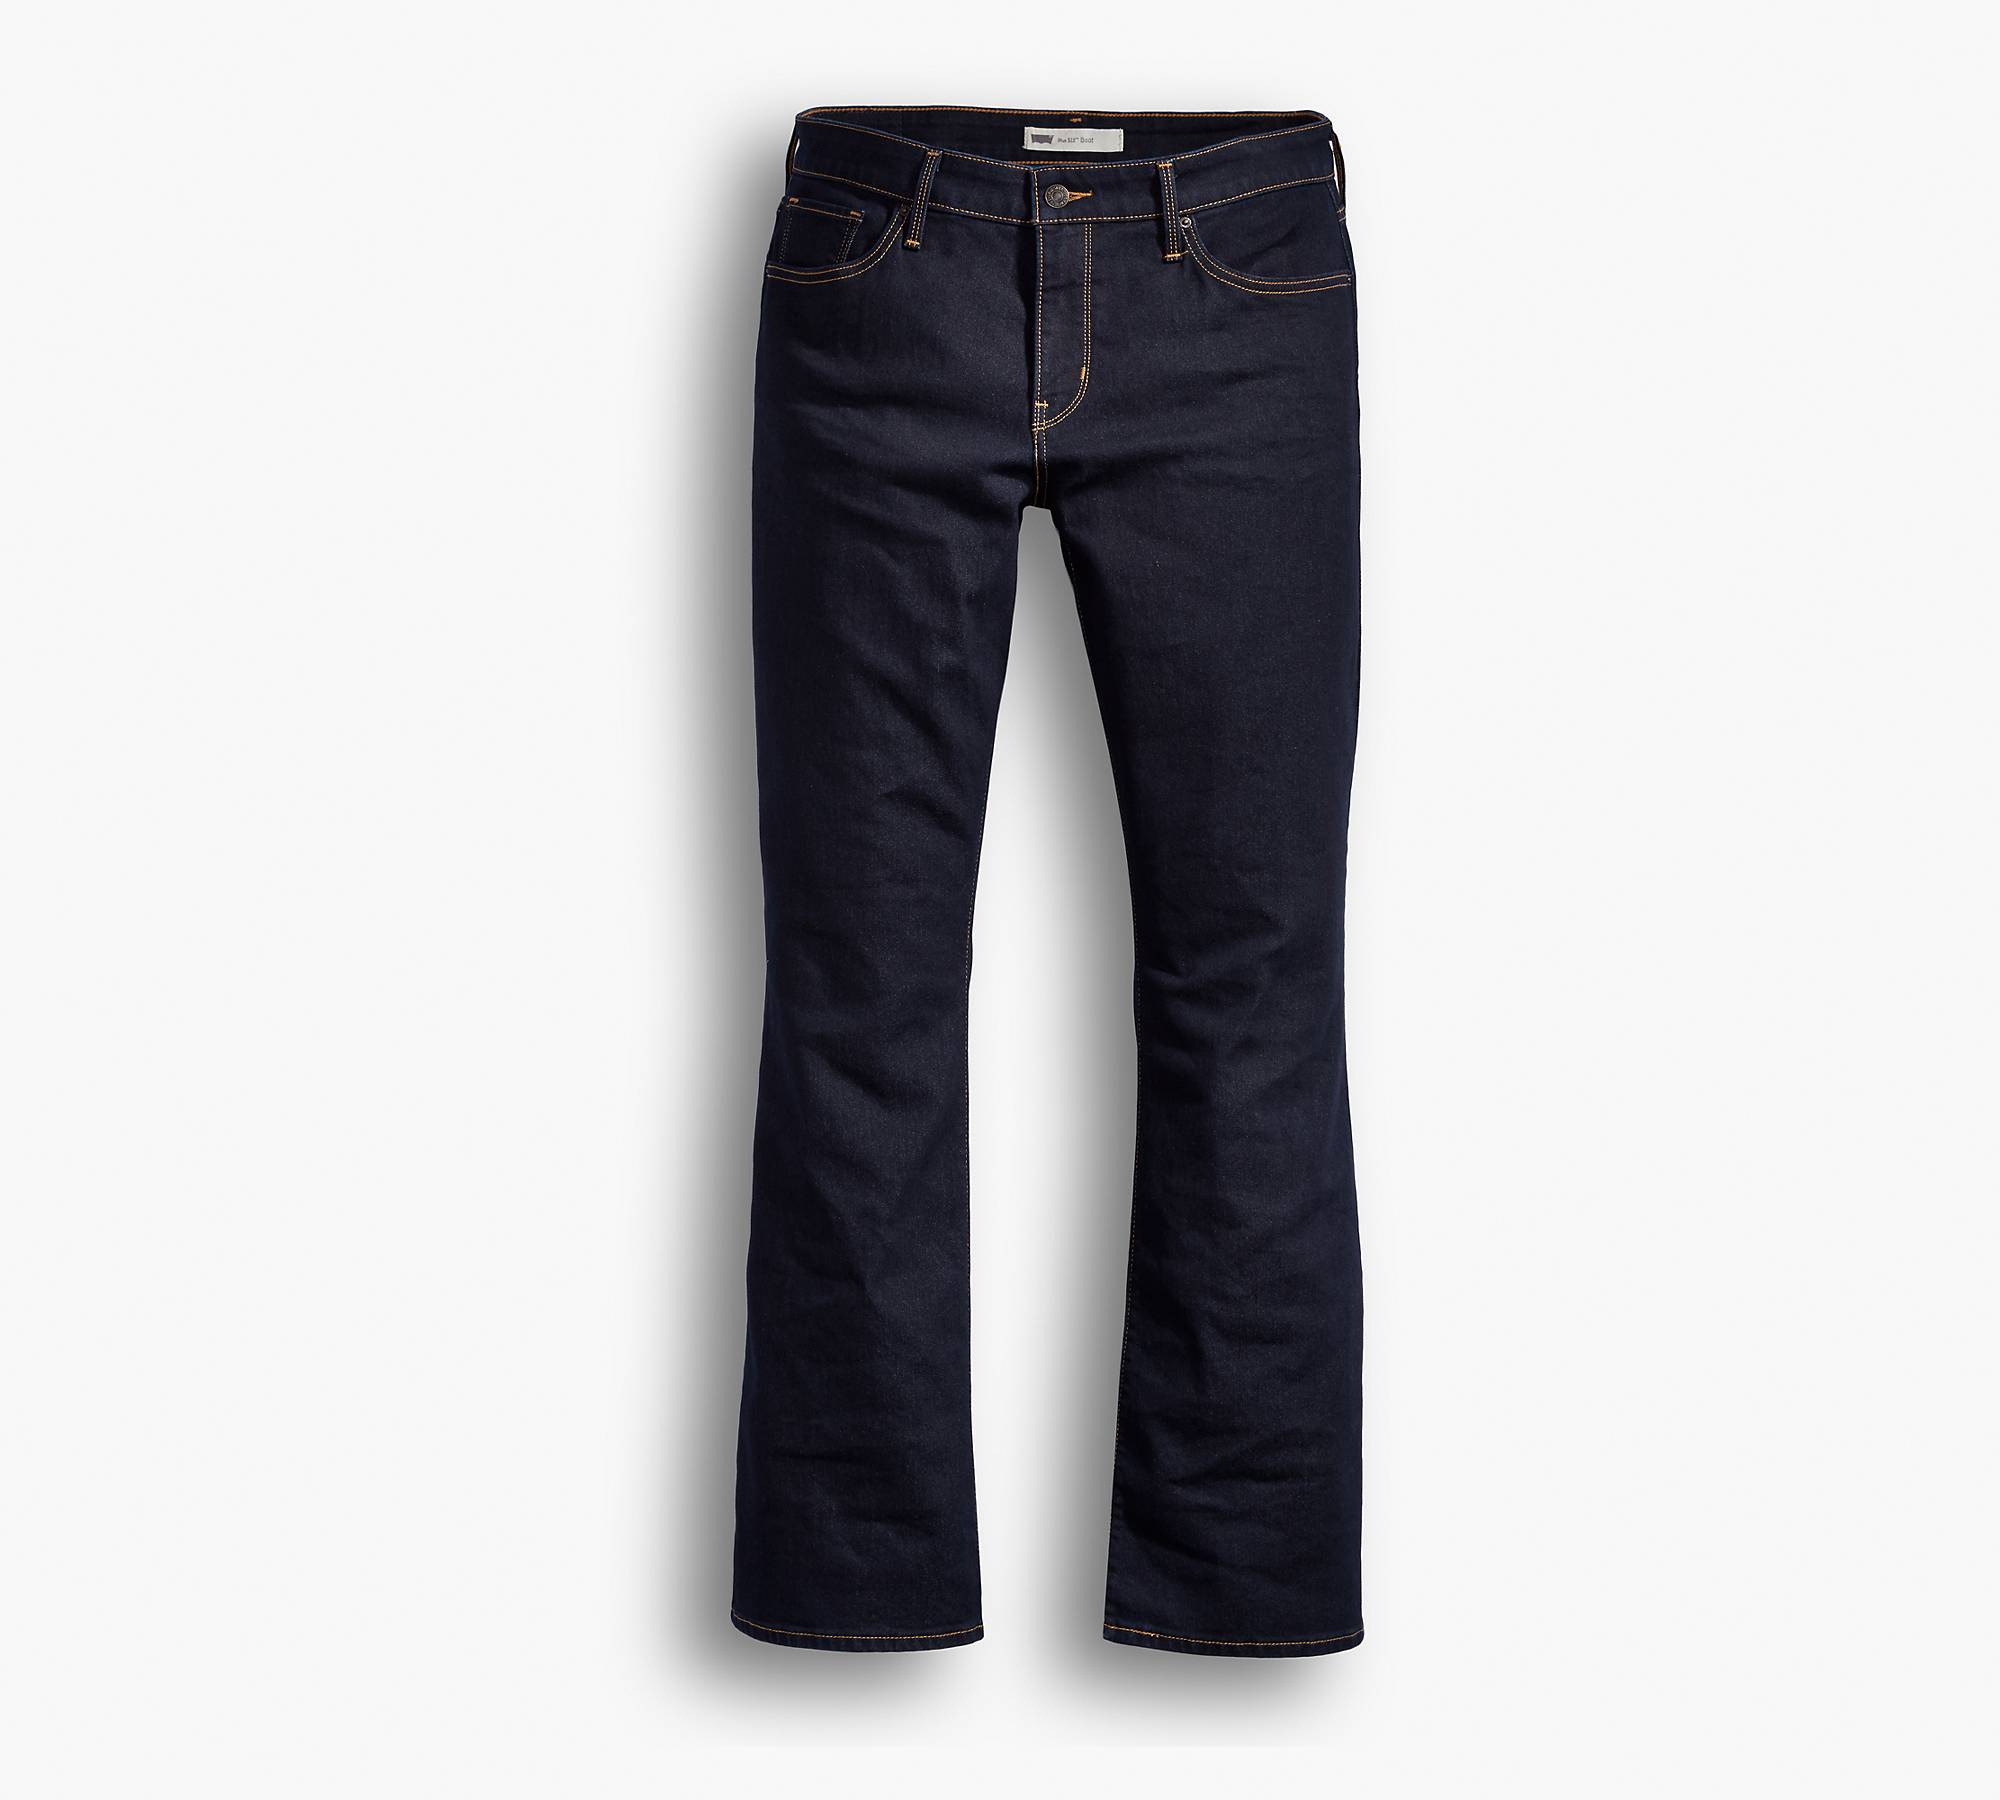 Kan niet lezen of schrijven wacht formeel 315 Shaping Bootcut Women's Jeans (plus Size) - Dark Wash | Levi's® US